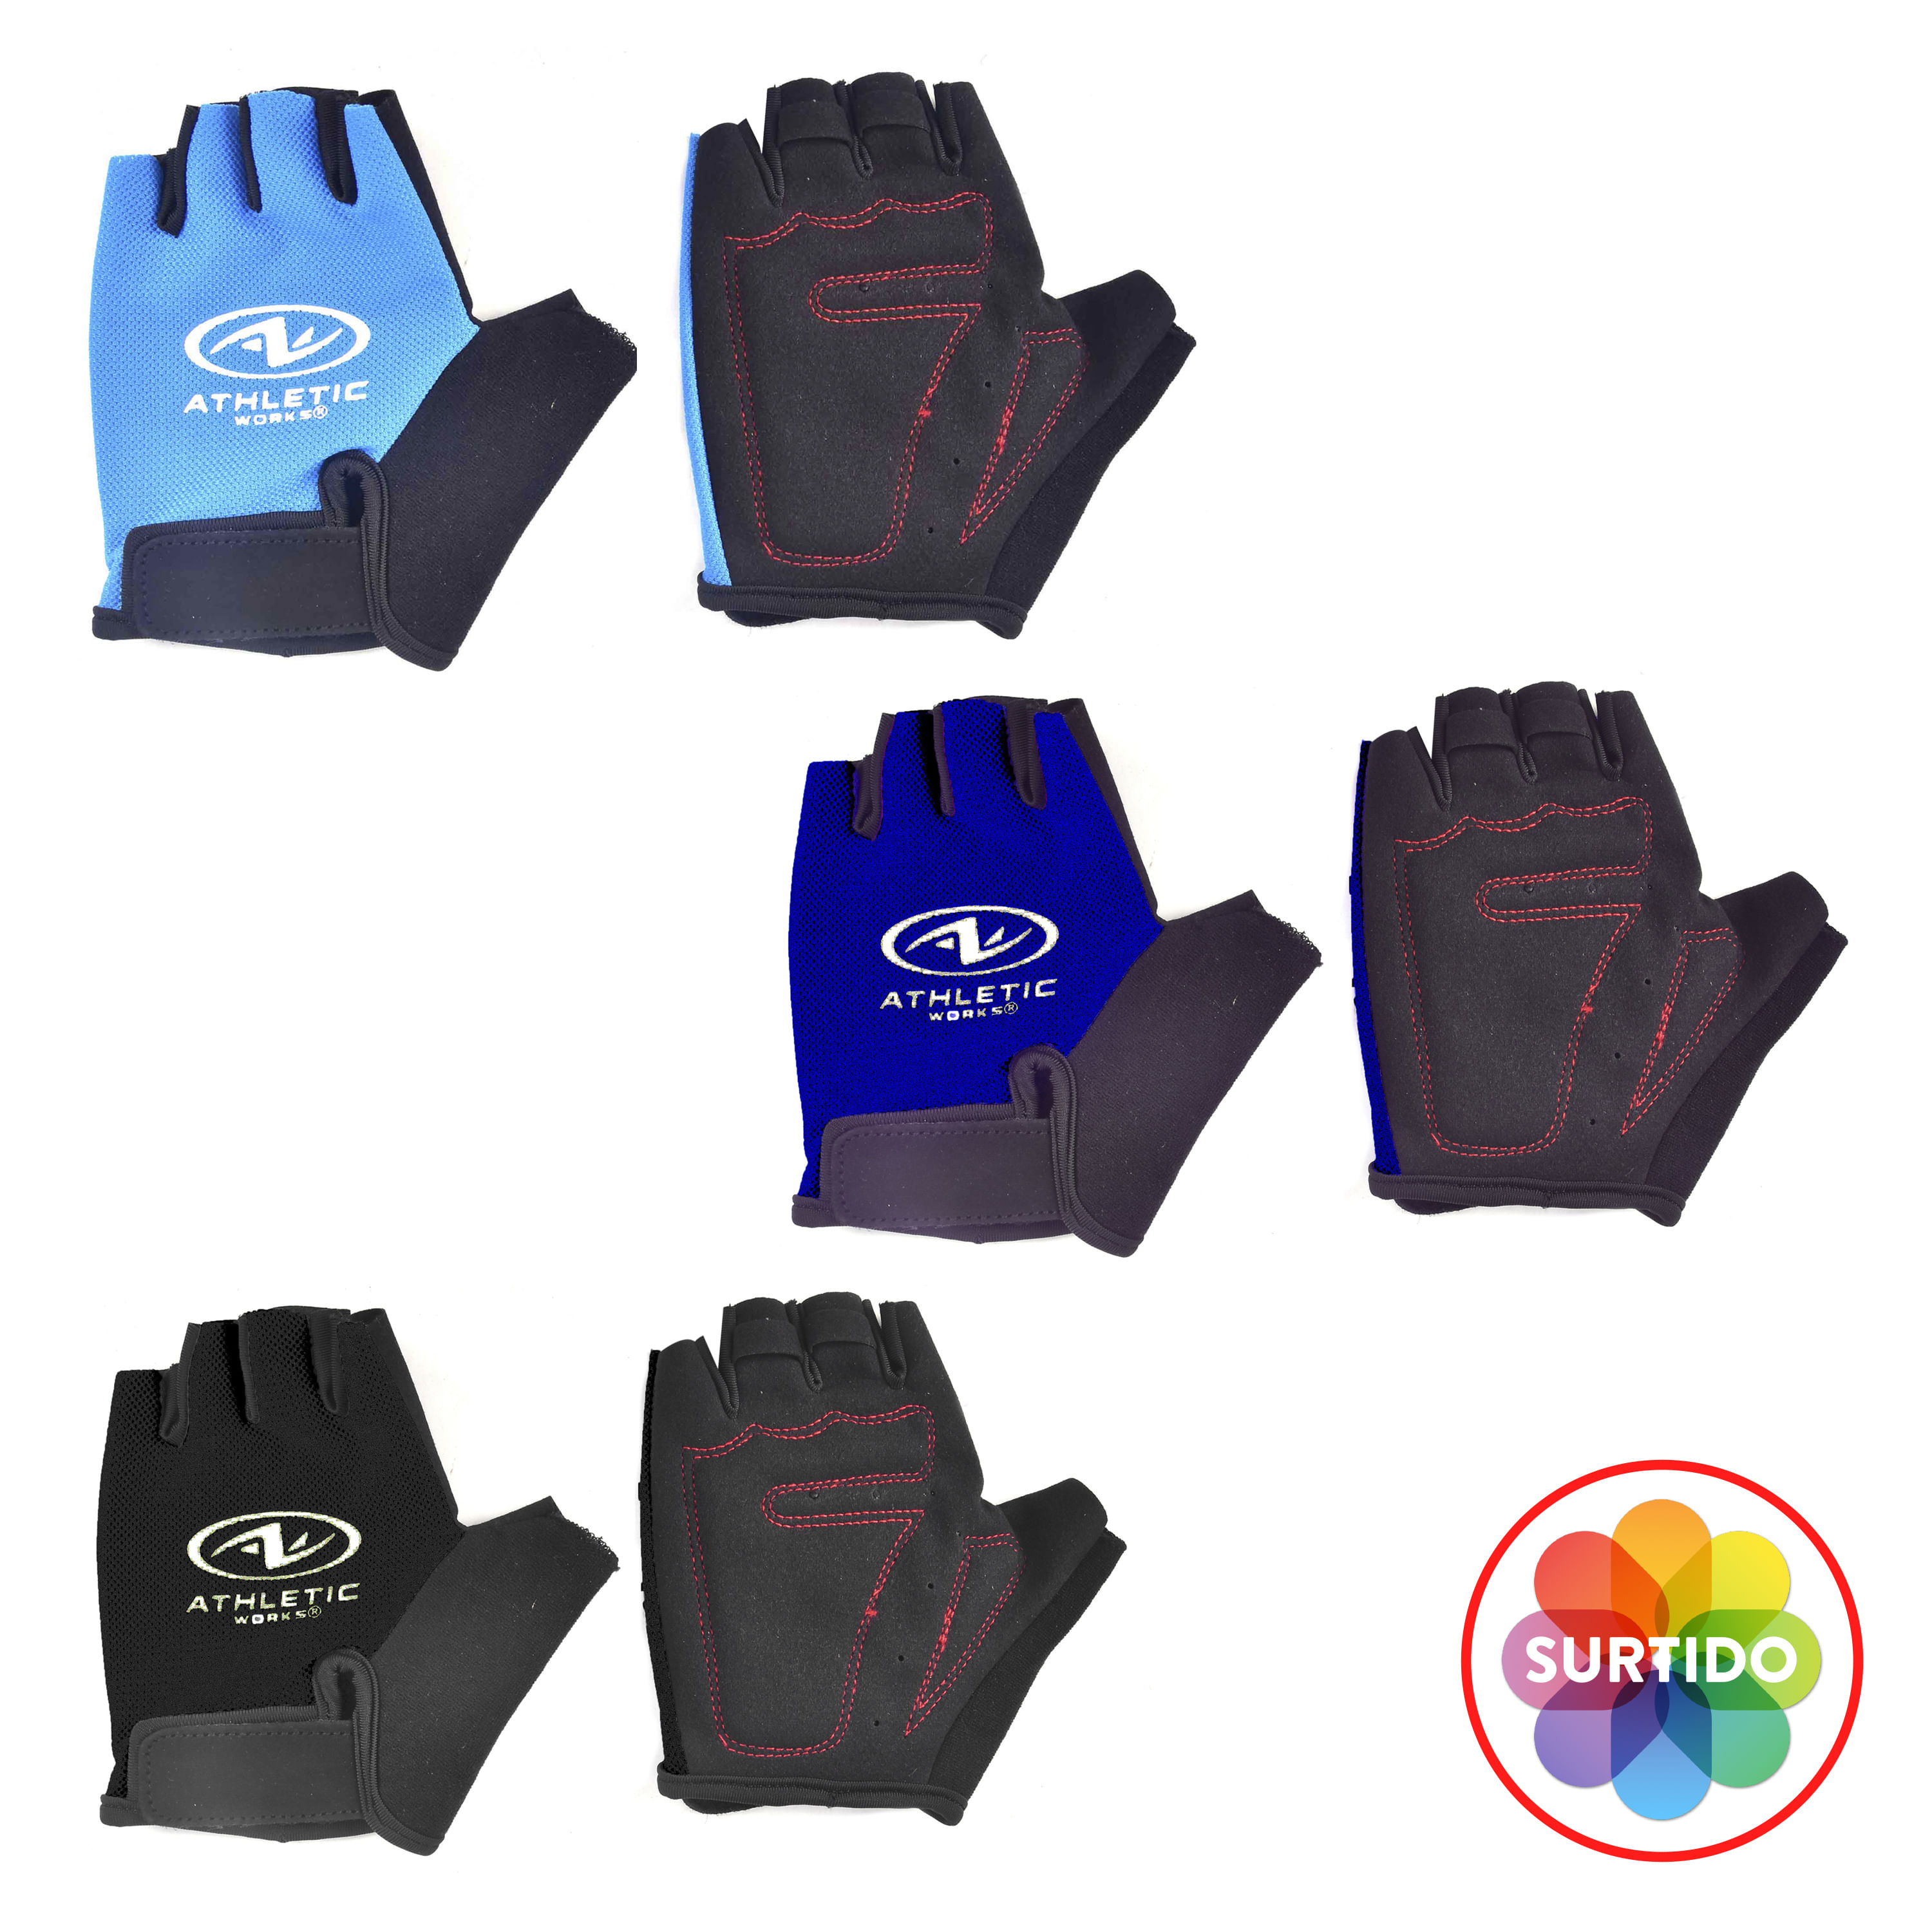 Viktor Sports - Busca tus guantes Fitness en Viktor Sports; tenemos en  variedad de tallas y colores. Diseños y modelos disponibles para hombre y  mujer.